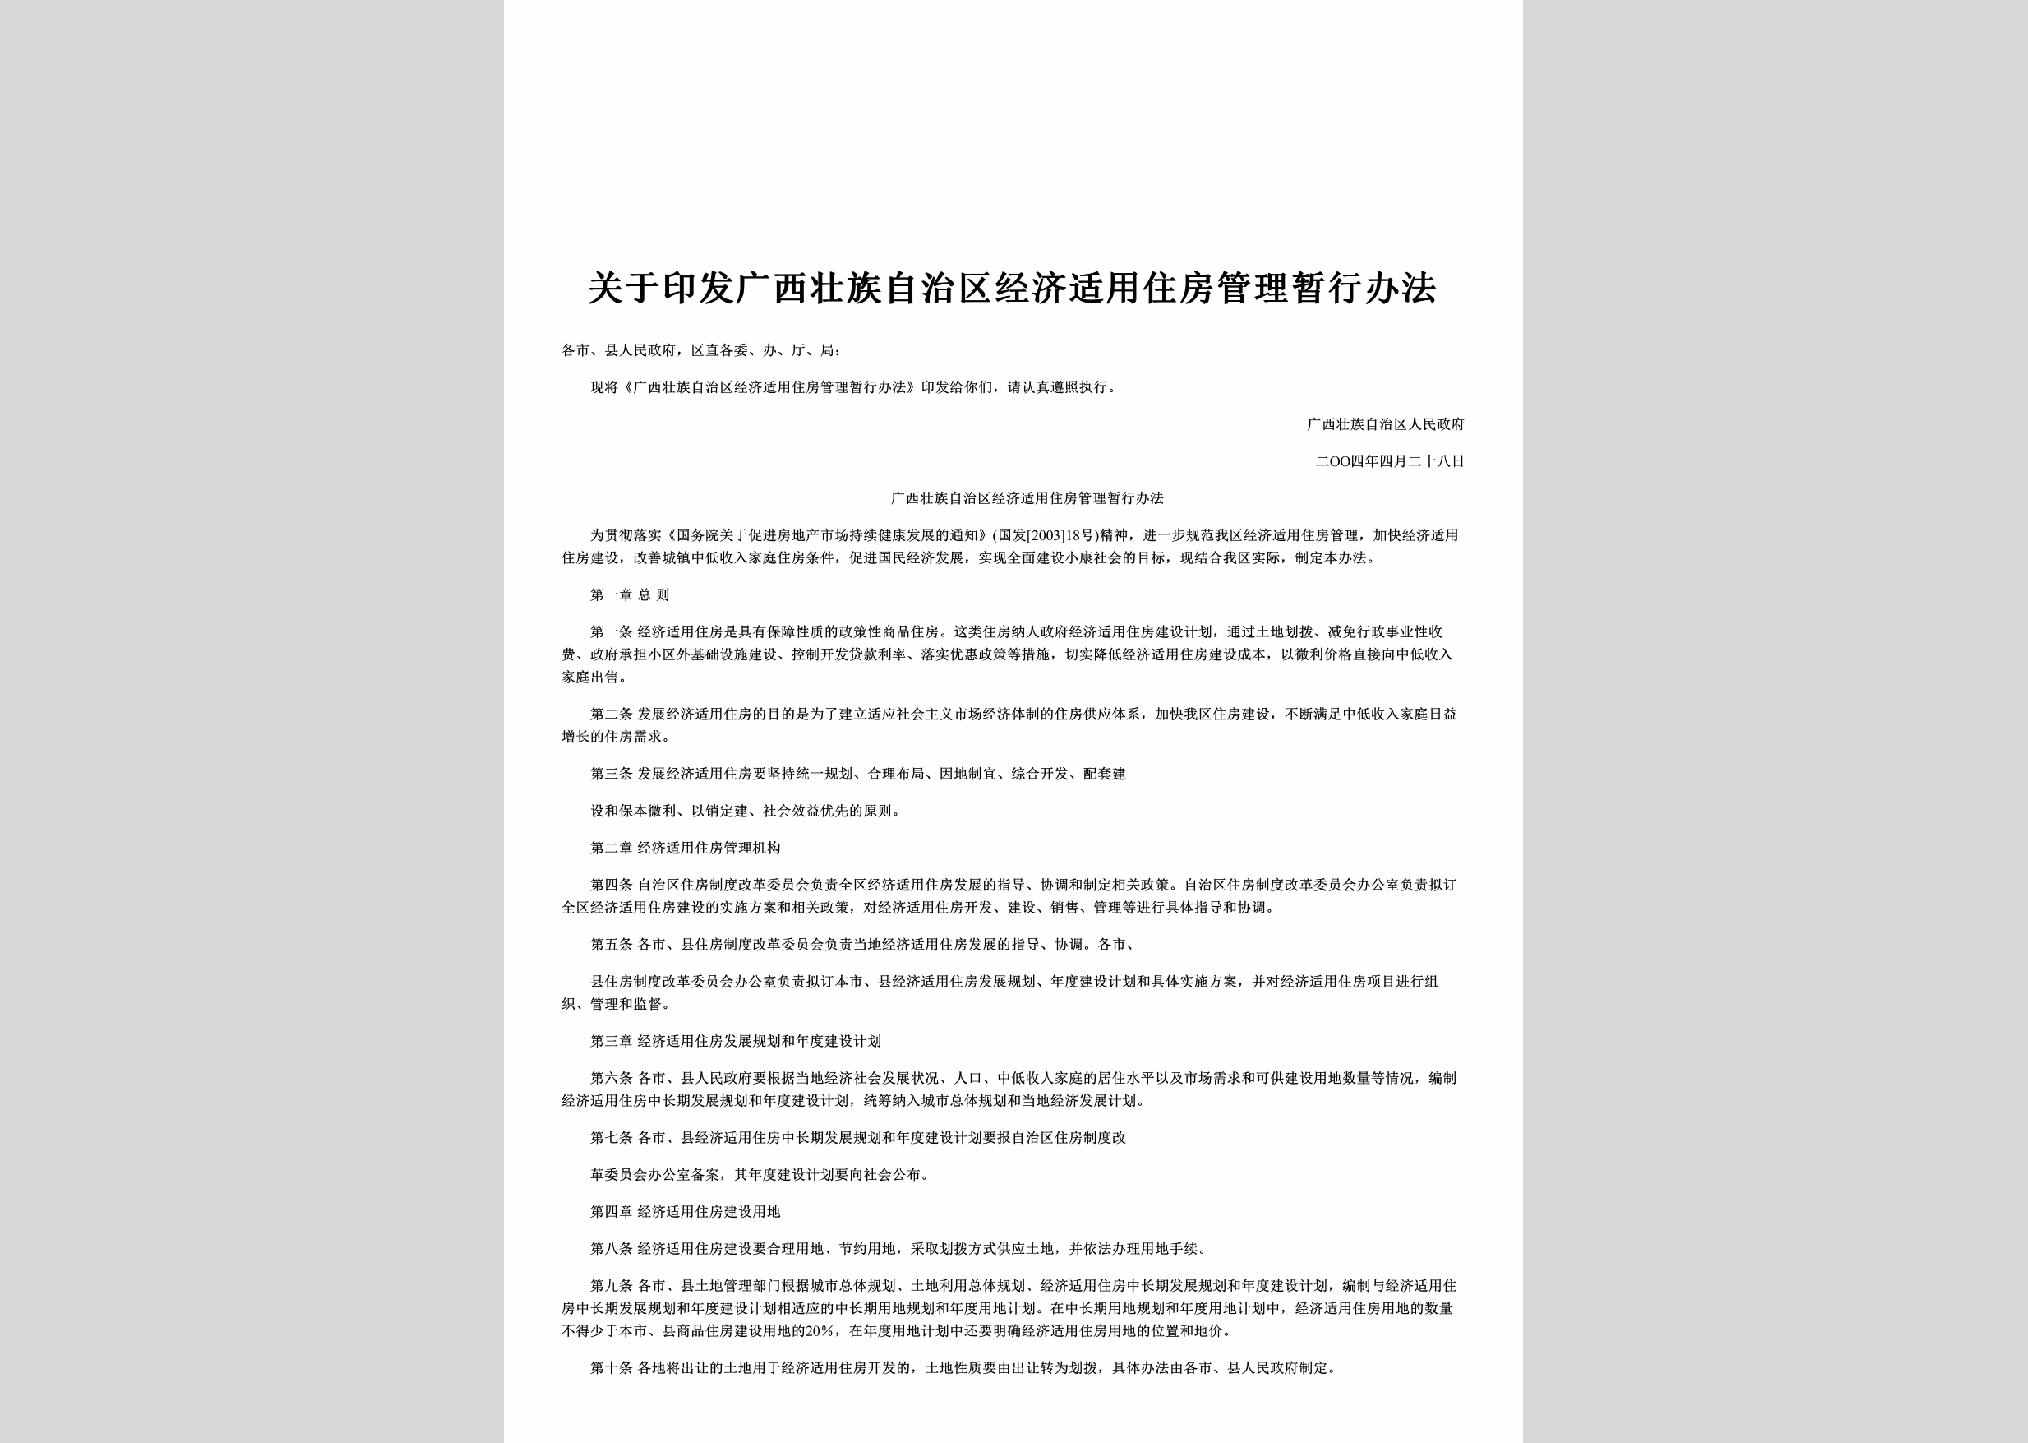 桂政发[2004]23号：关于印发广西壮族自治区经济适用住房管理暂行办法